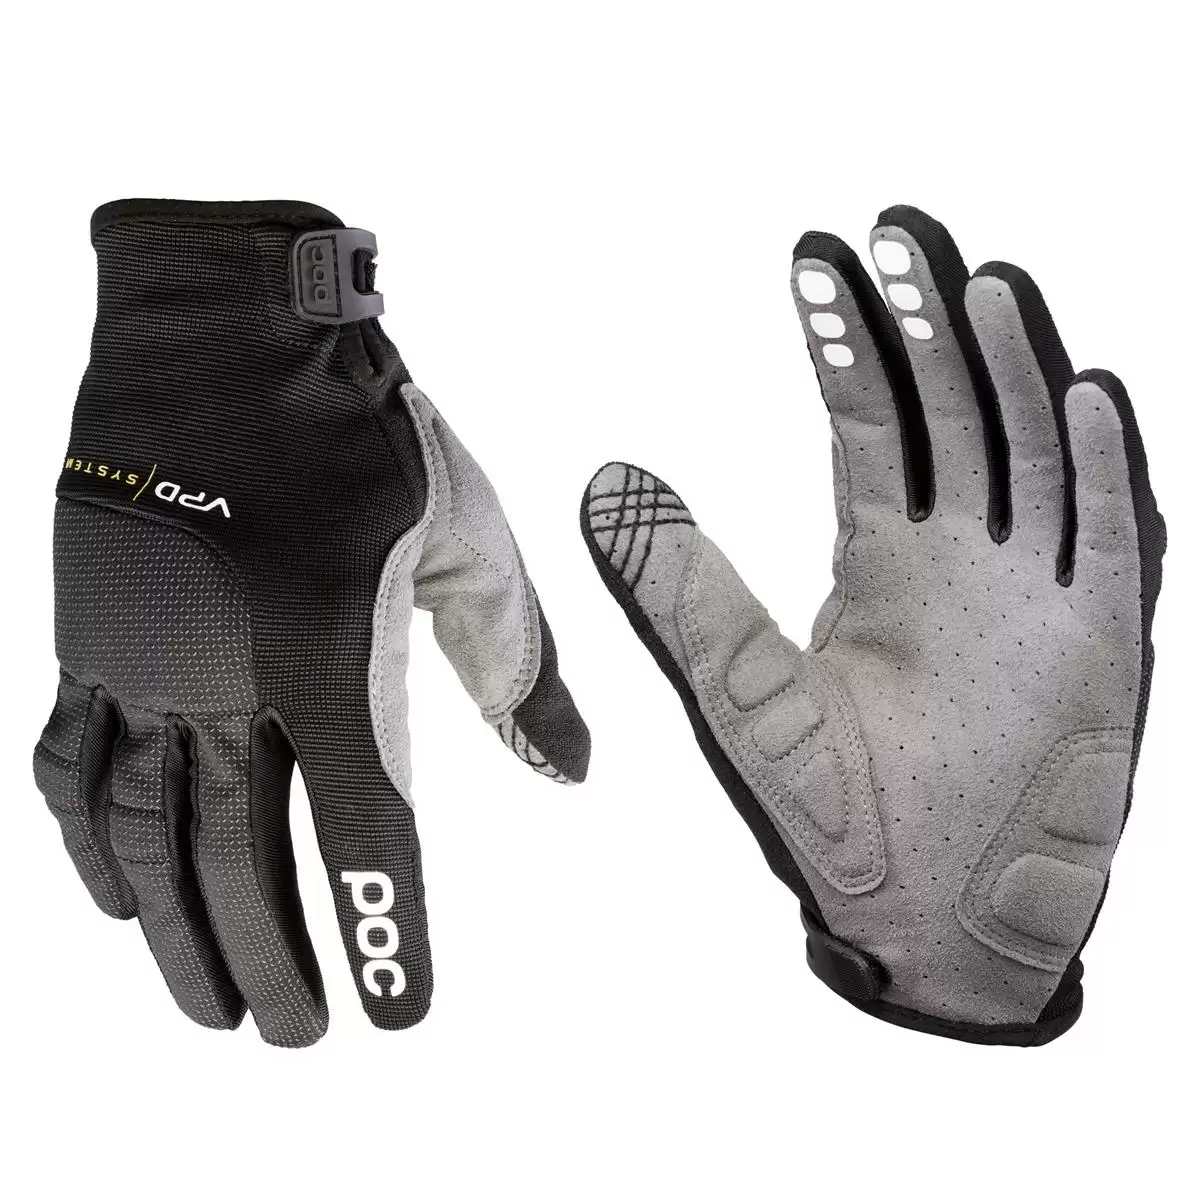 Guanti protettivi Resistance Pro DH Glove nero taglia taglia XL - image